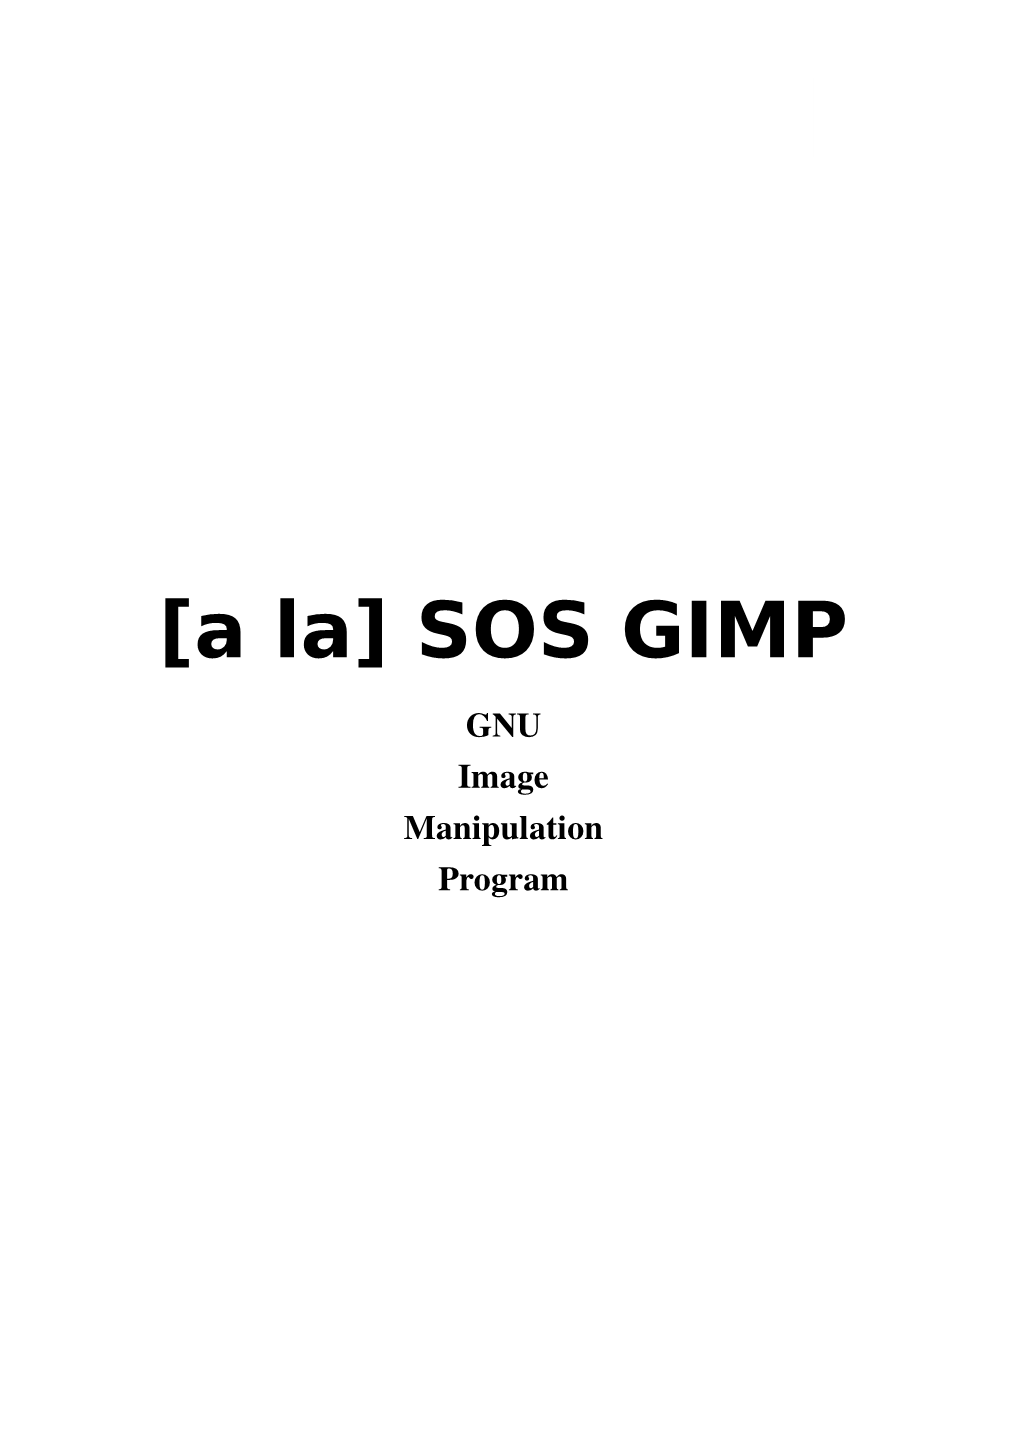 [A La] SOS GIMP